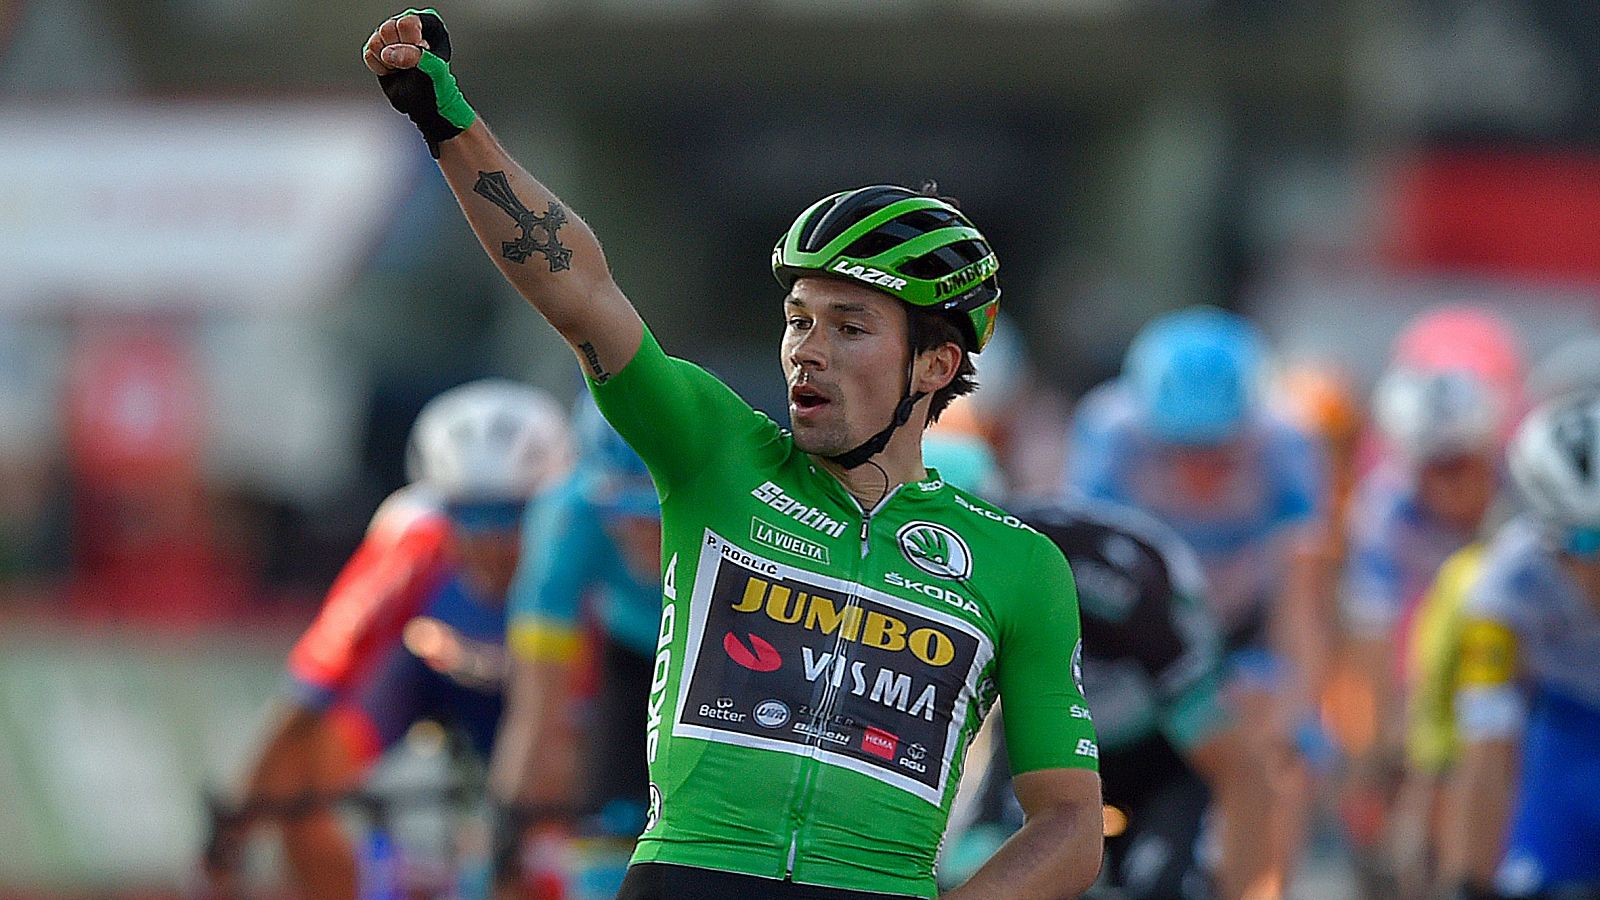 Primoz Roglic (Jumbo Visma) celebra en la meta de Suances su tercera victoria parcial en la Vuelta 2020.